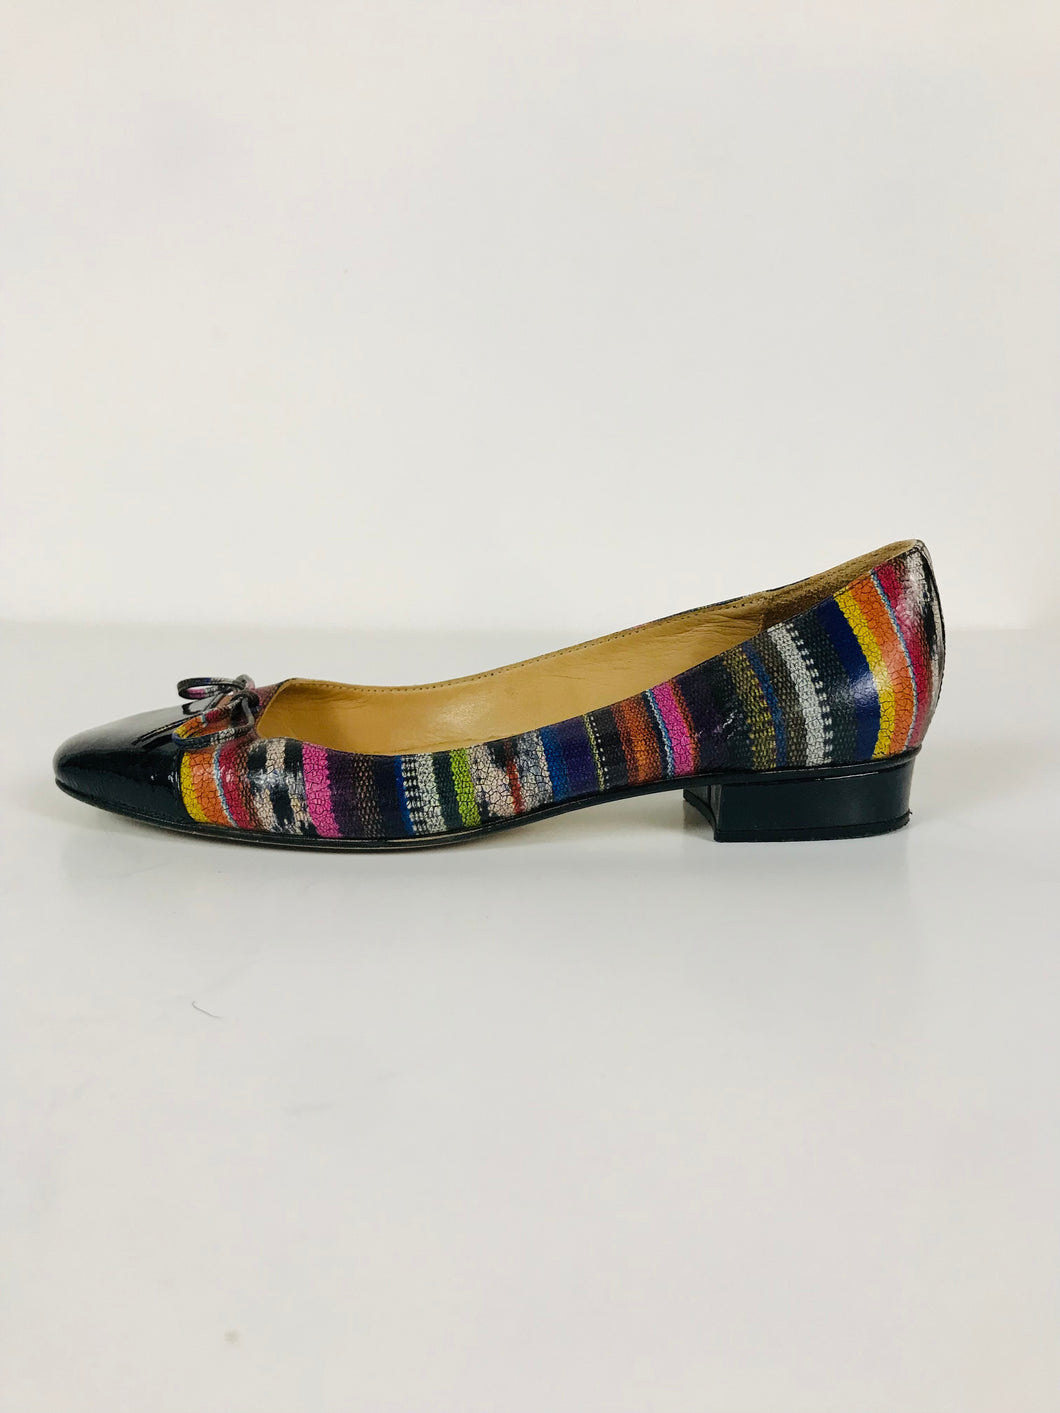 HB Espana Women's Slip-on Ballet Pumps Shoes | 38 UK5 | Multicolour